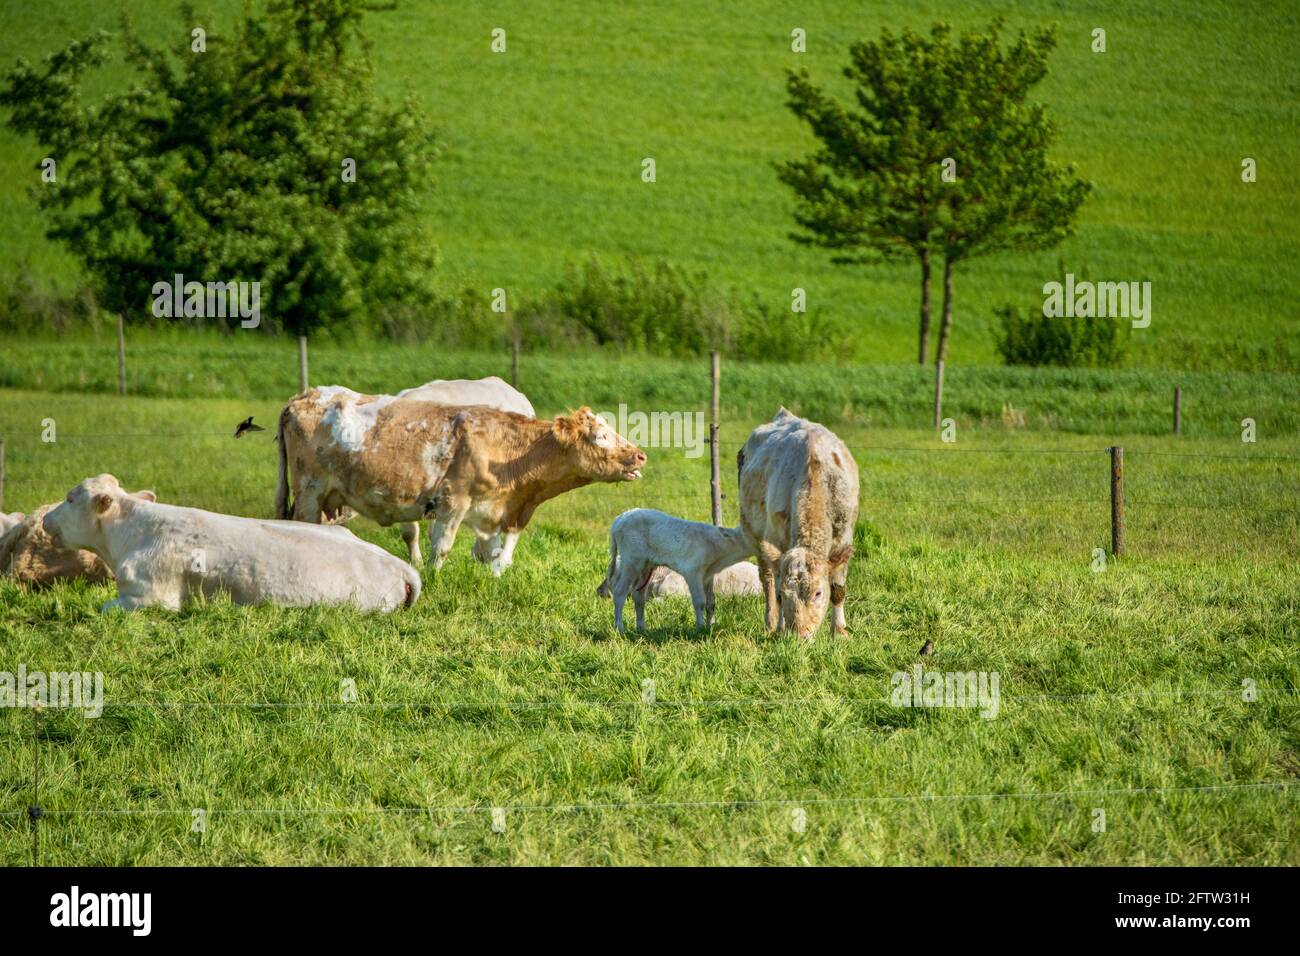 vaches heureuses dans la prairie, libre, liberté, nature, bien-être animal Banque D'Images